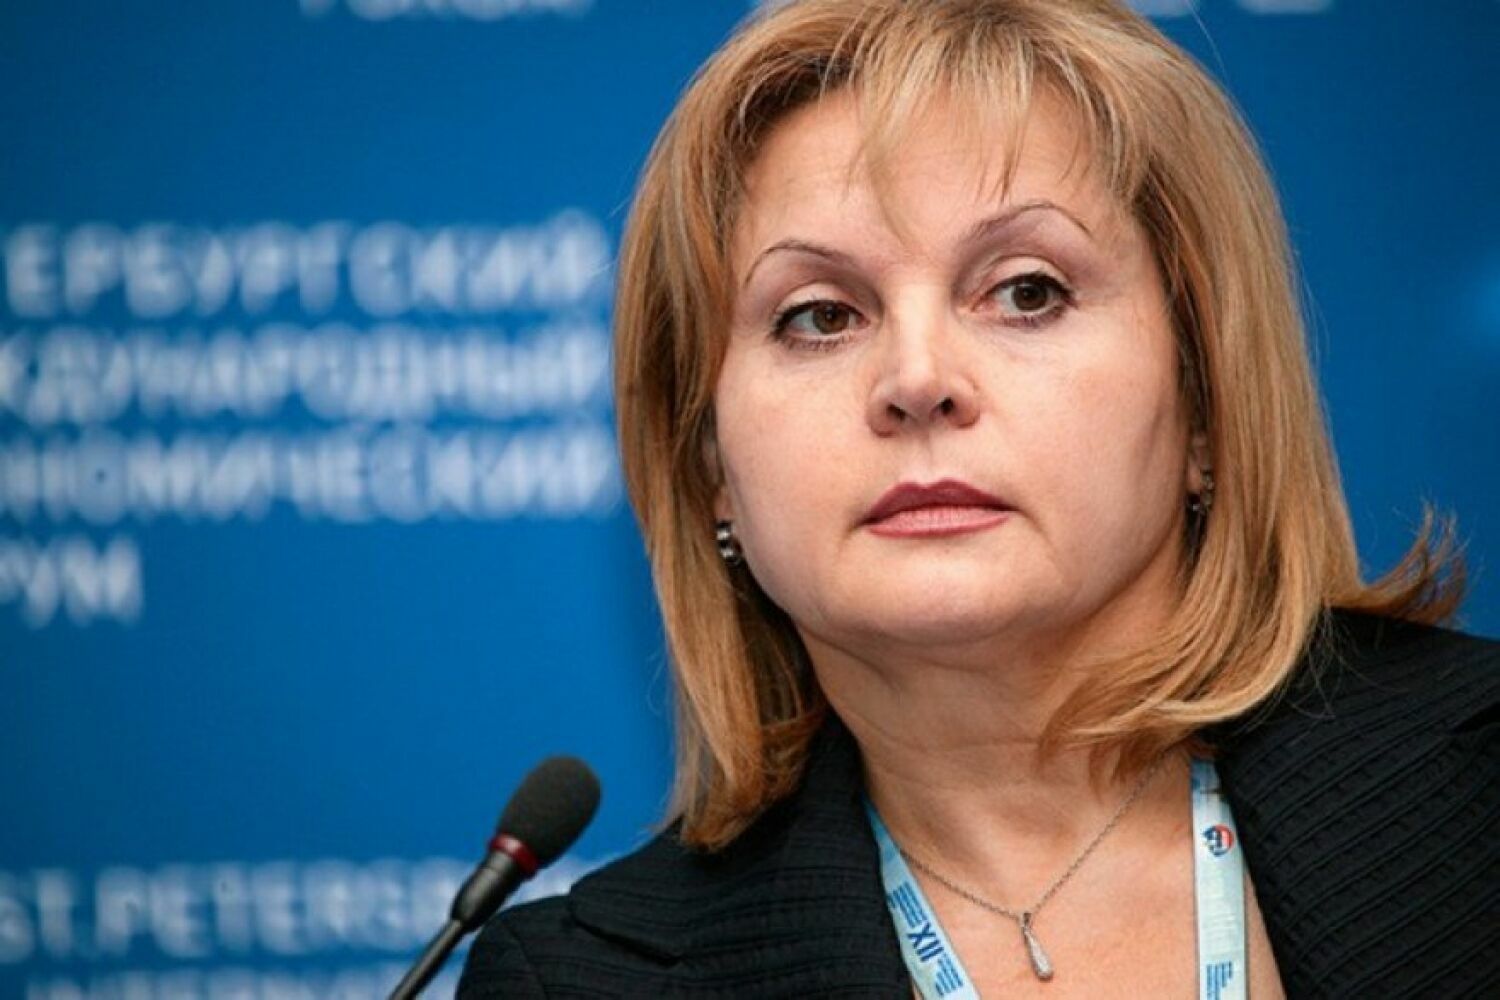 Памфилова объявила выборы в Госдуму состоявшимися